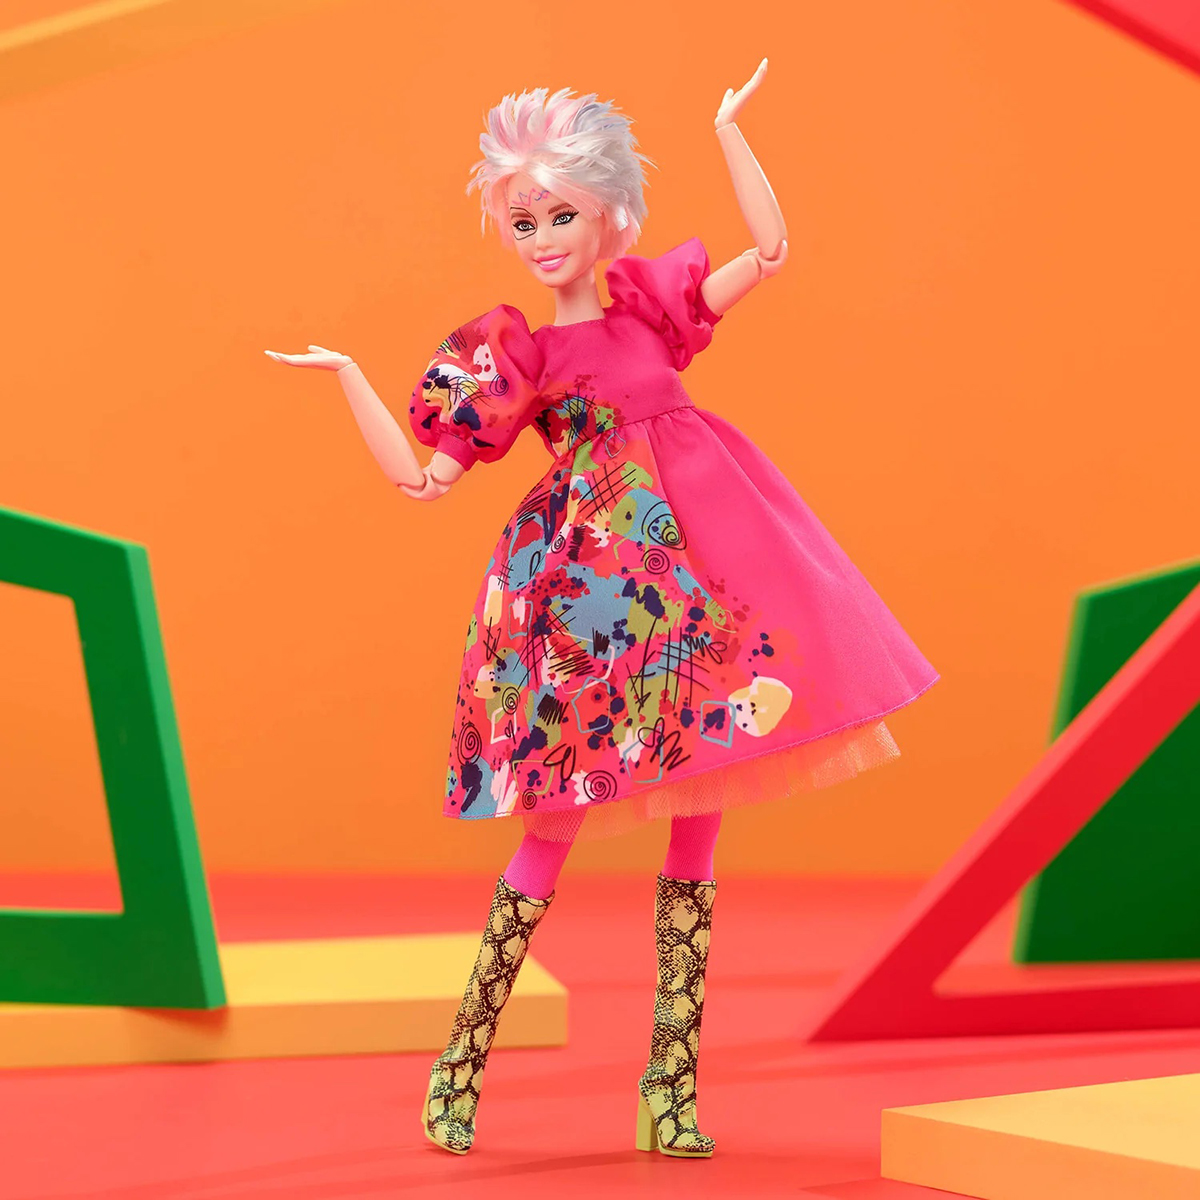 Barbie Bizarre », Mattel capitalise sur le succès du film en proposant une  poupée complètement déjantée - NeozOne